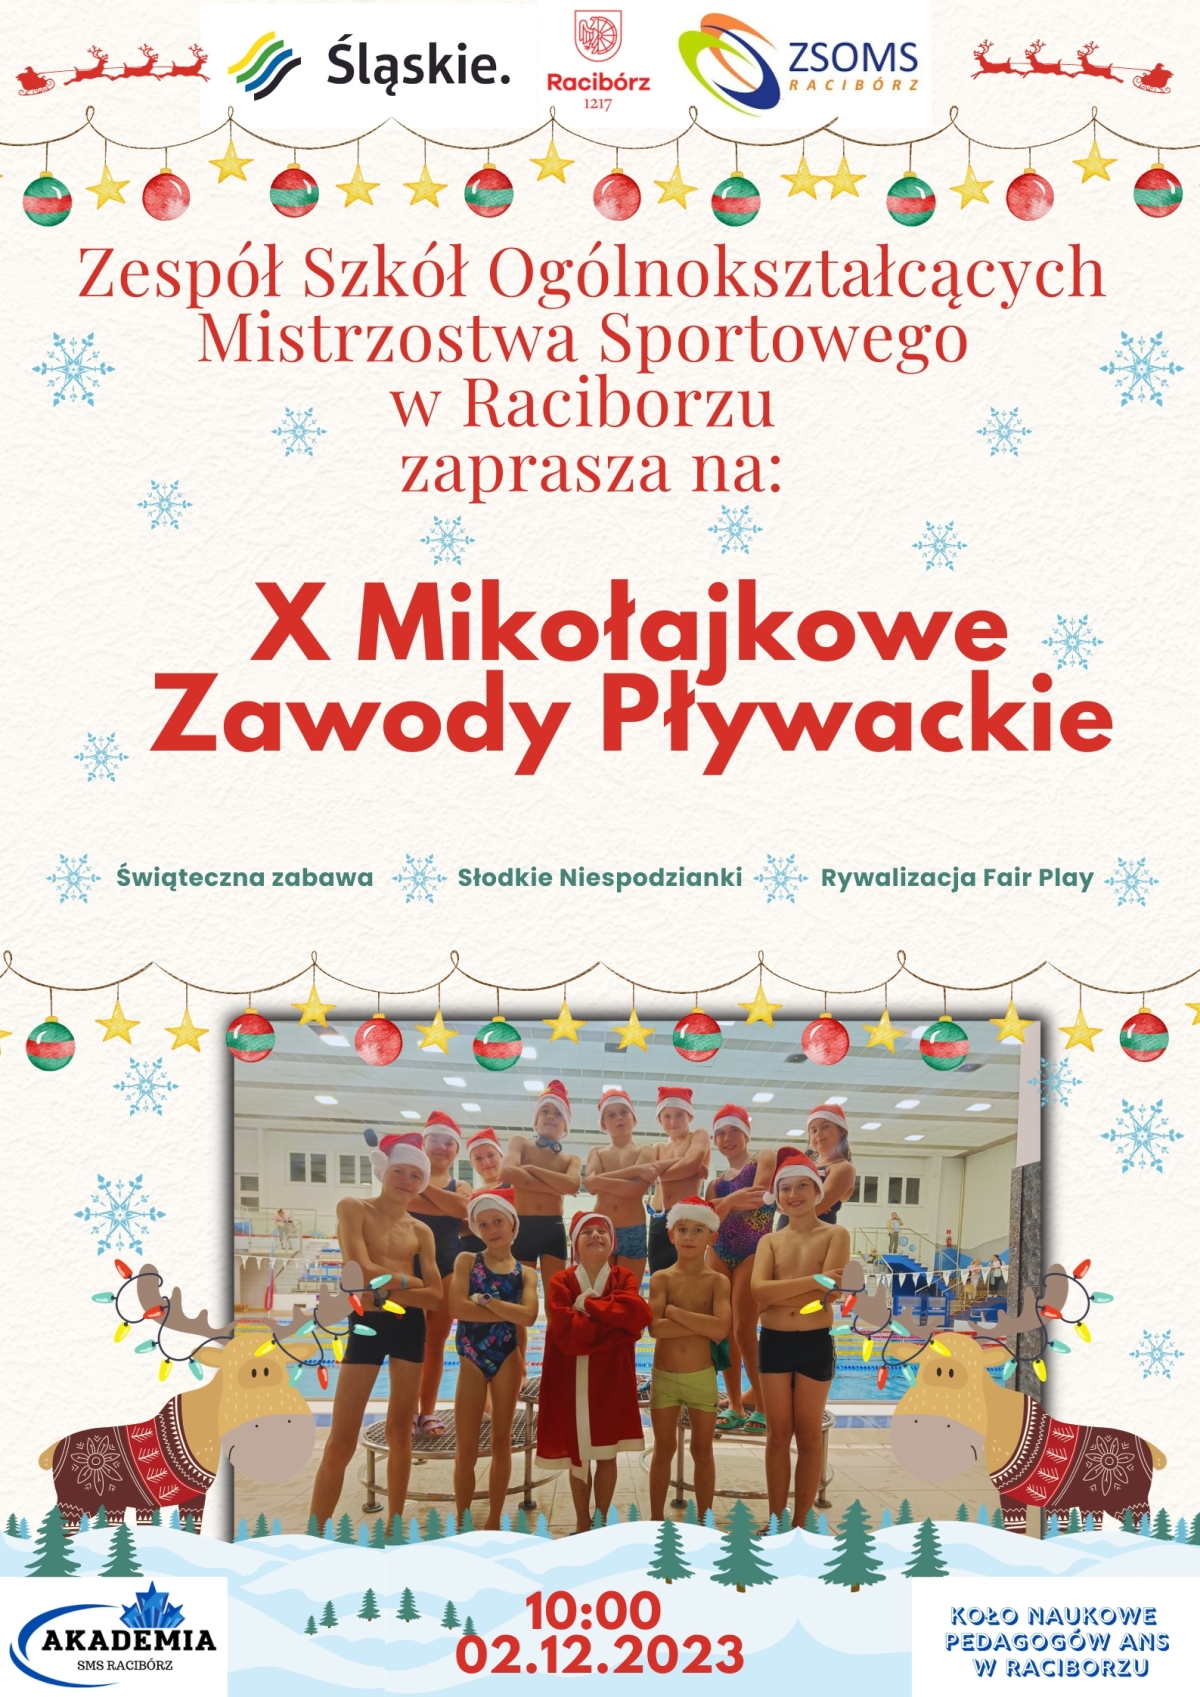 x_mikoajkowe_zawody_pywackie_plakat